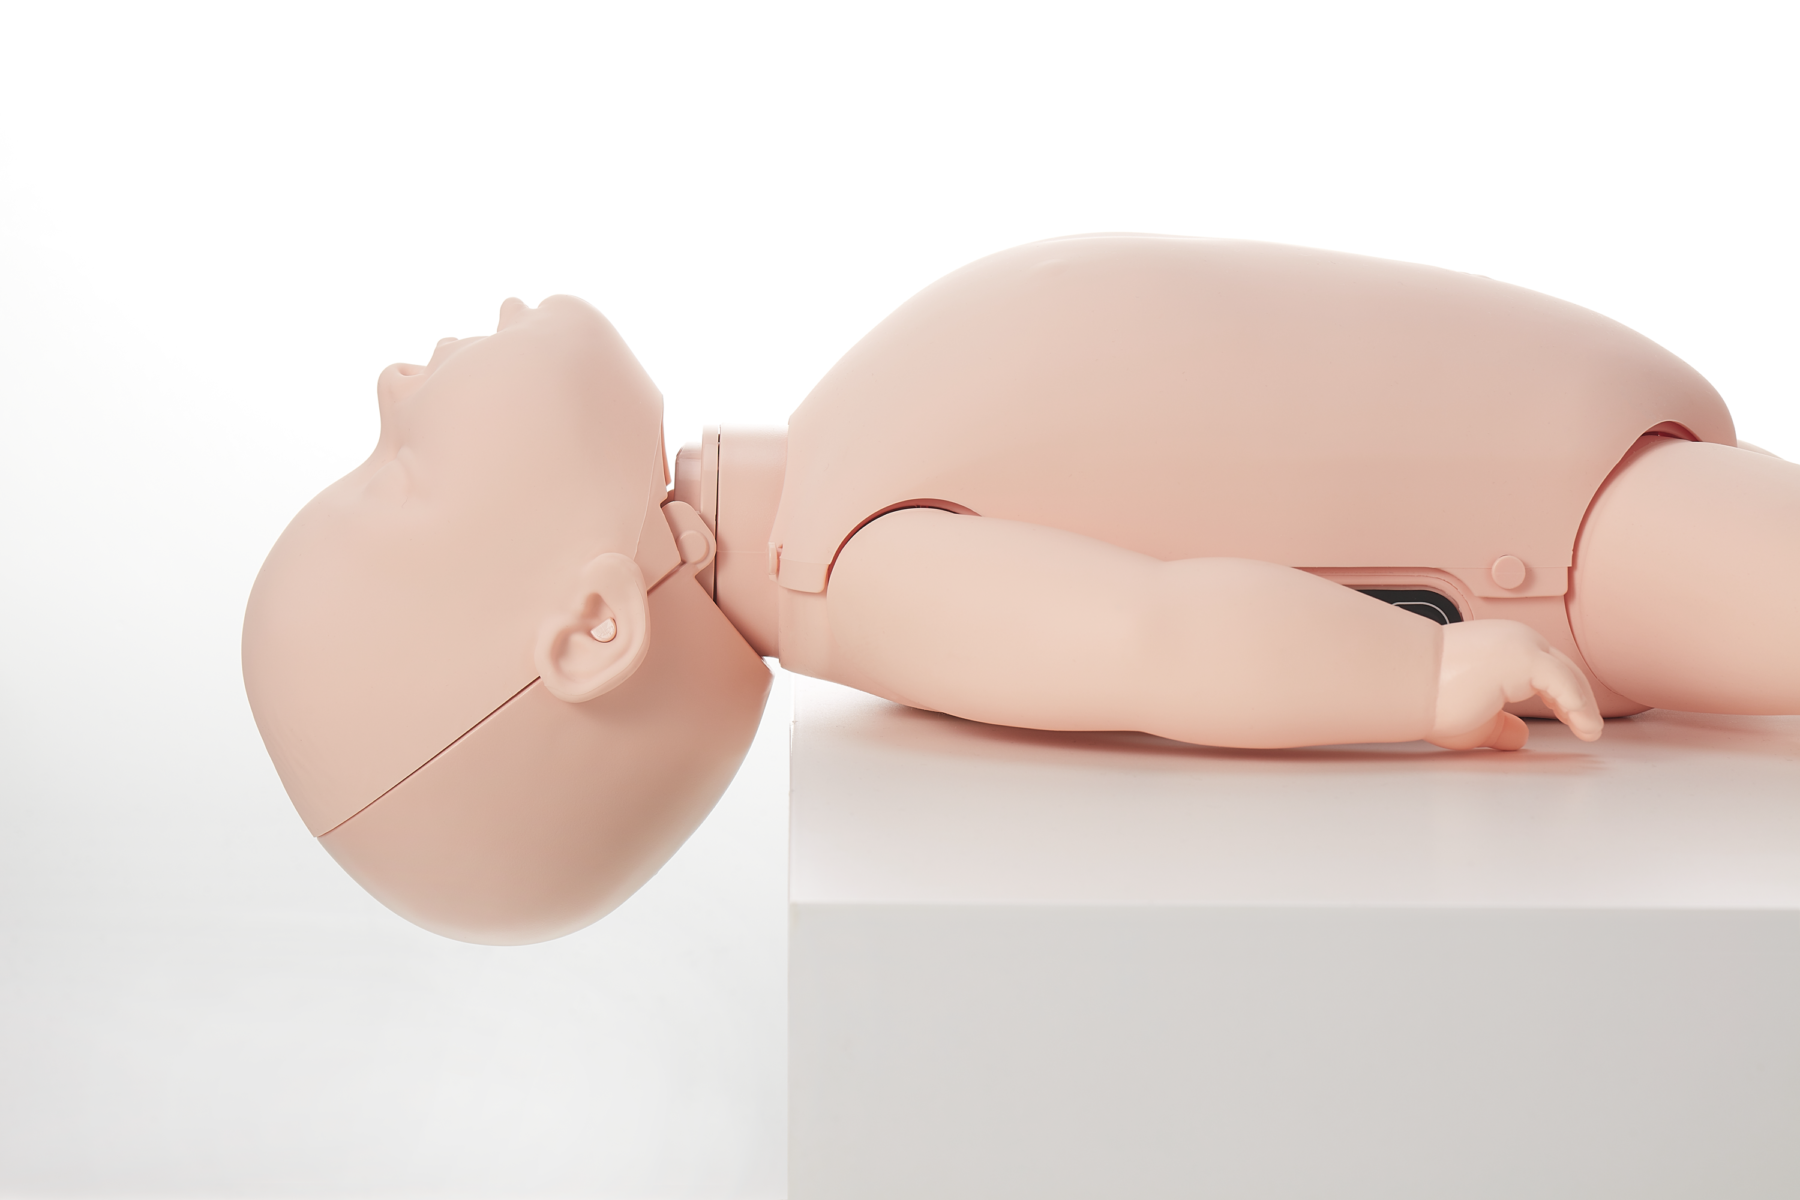 Brayden Baby illuminating CPR manikin showing full head tilt backwards